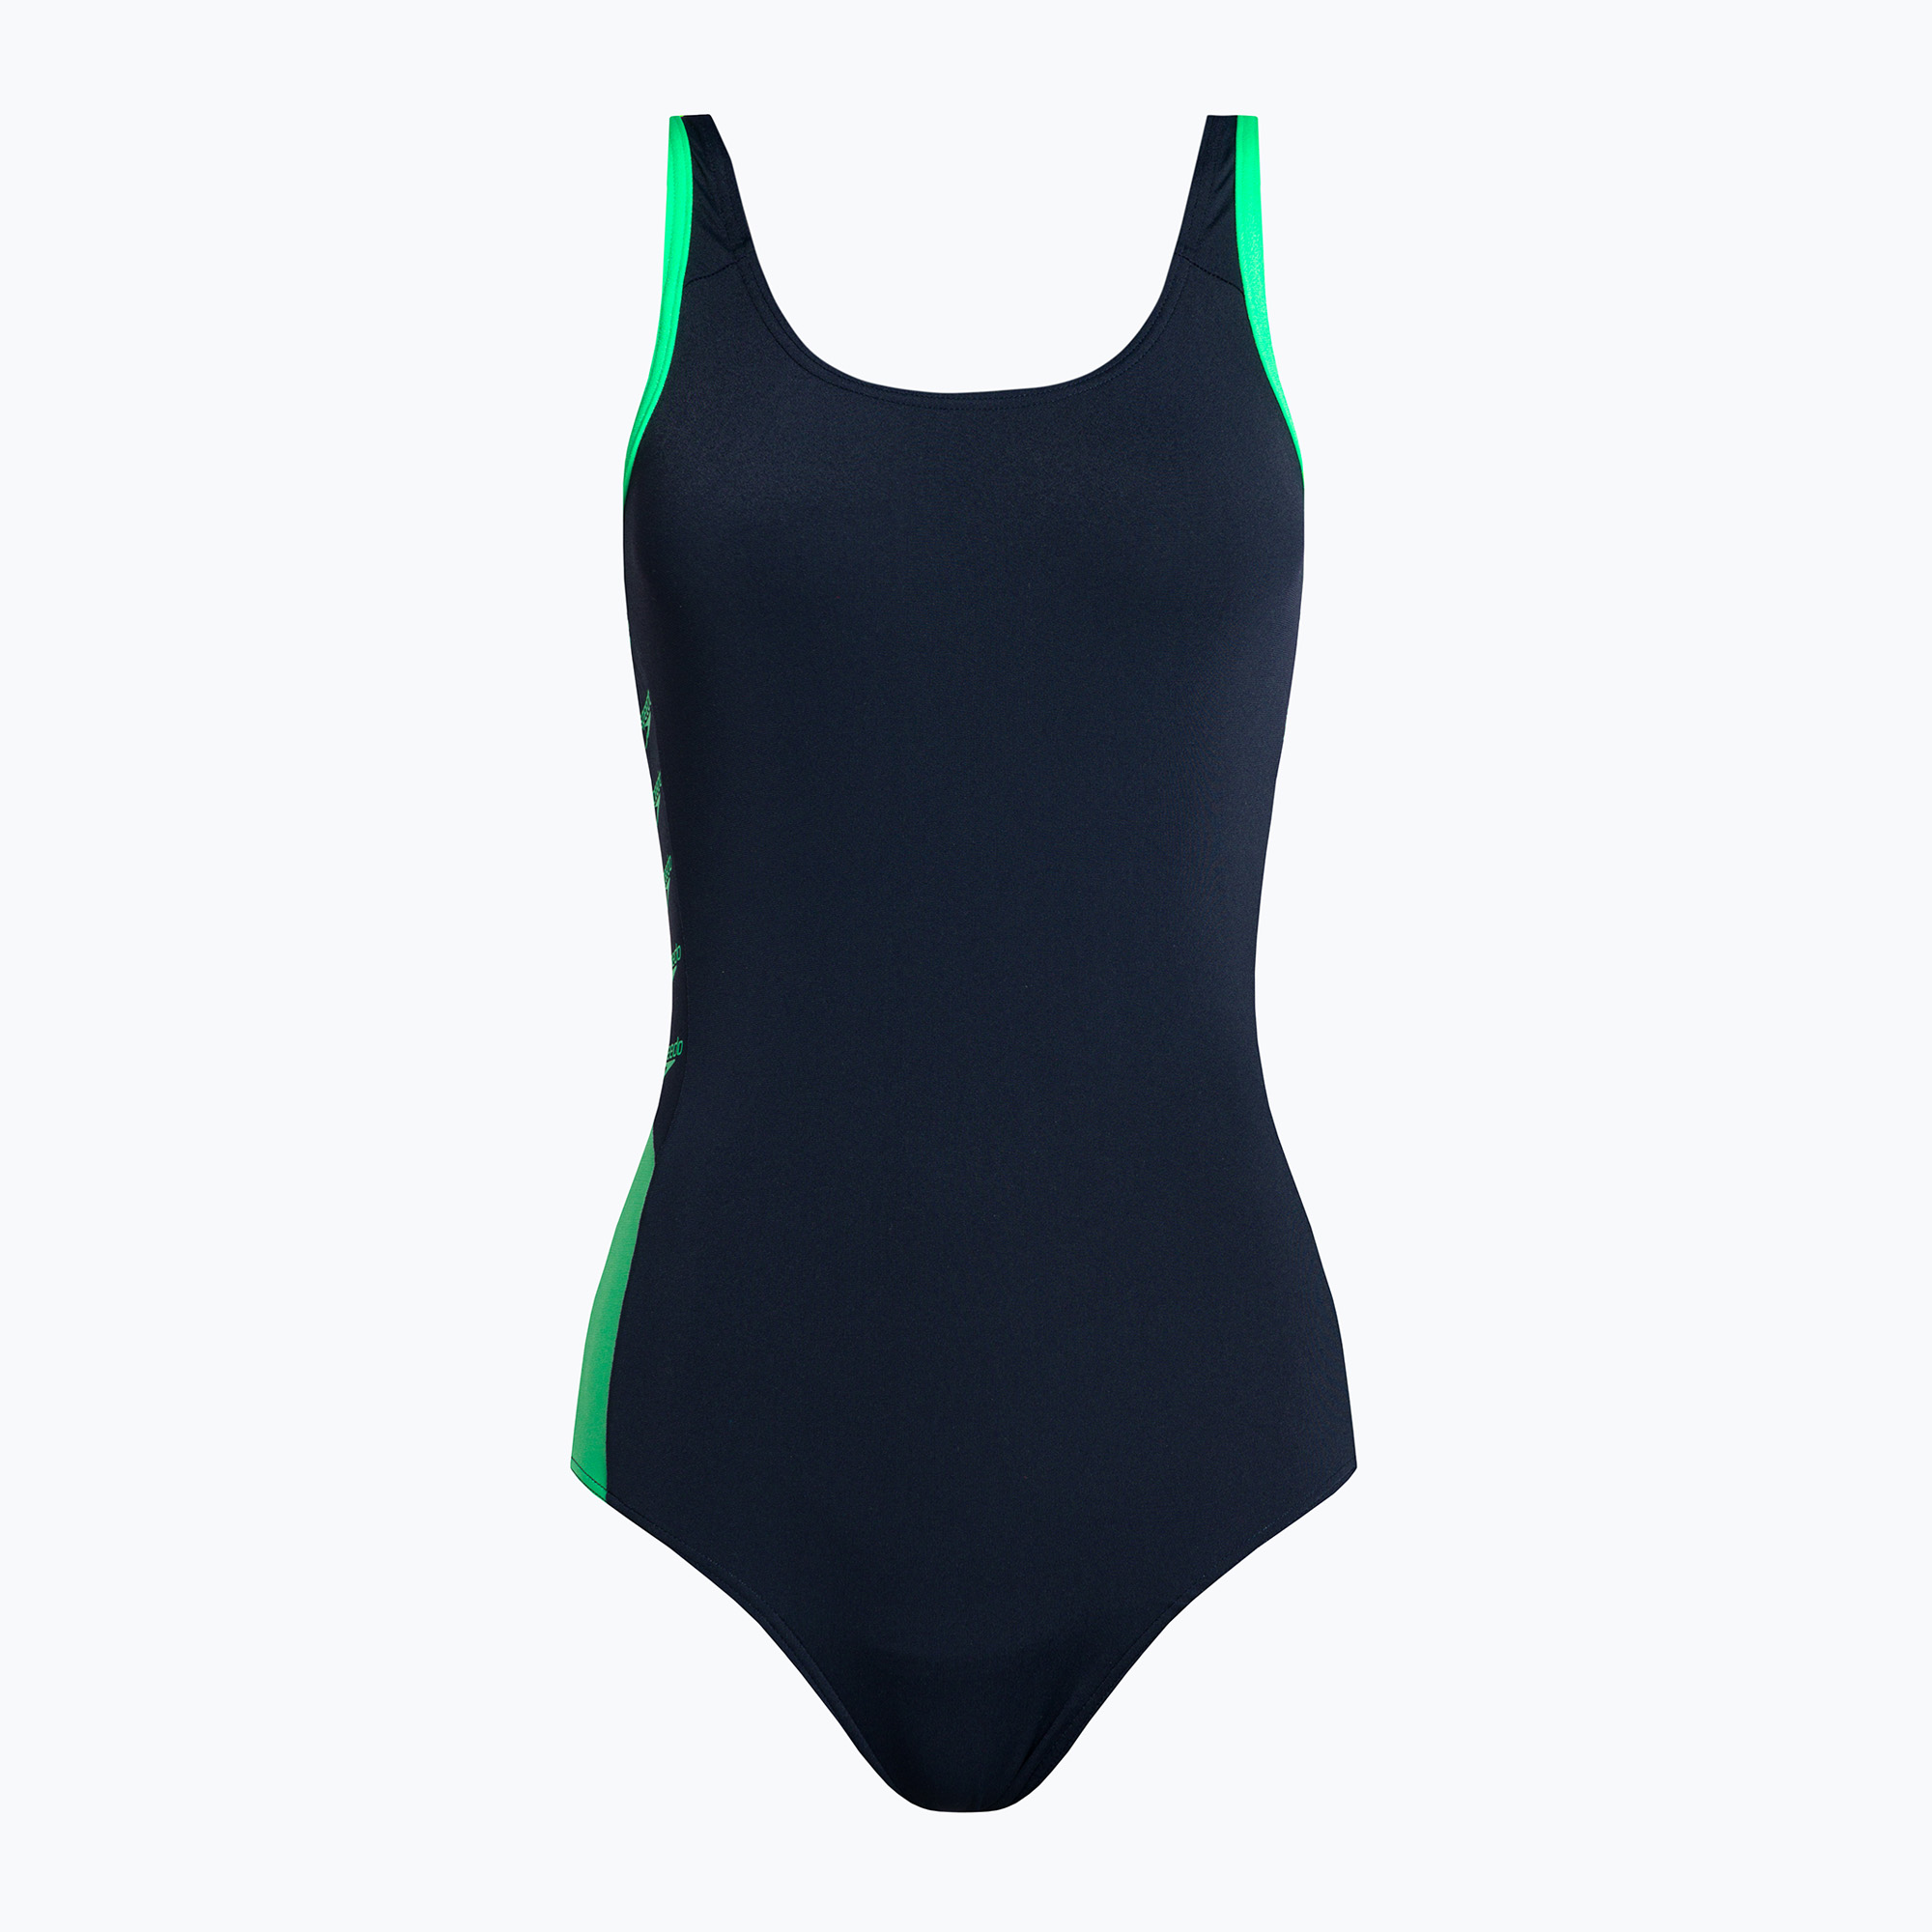 Speedo Boom Logo Splice Muscleback дамски бански костюм от една част тъмносиньо-зелено 68-12900